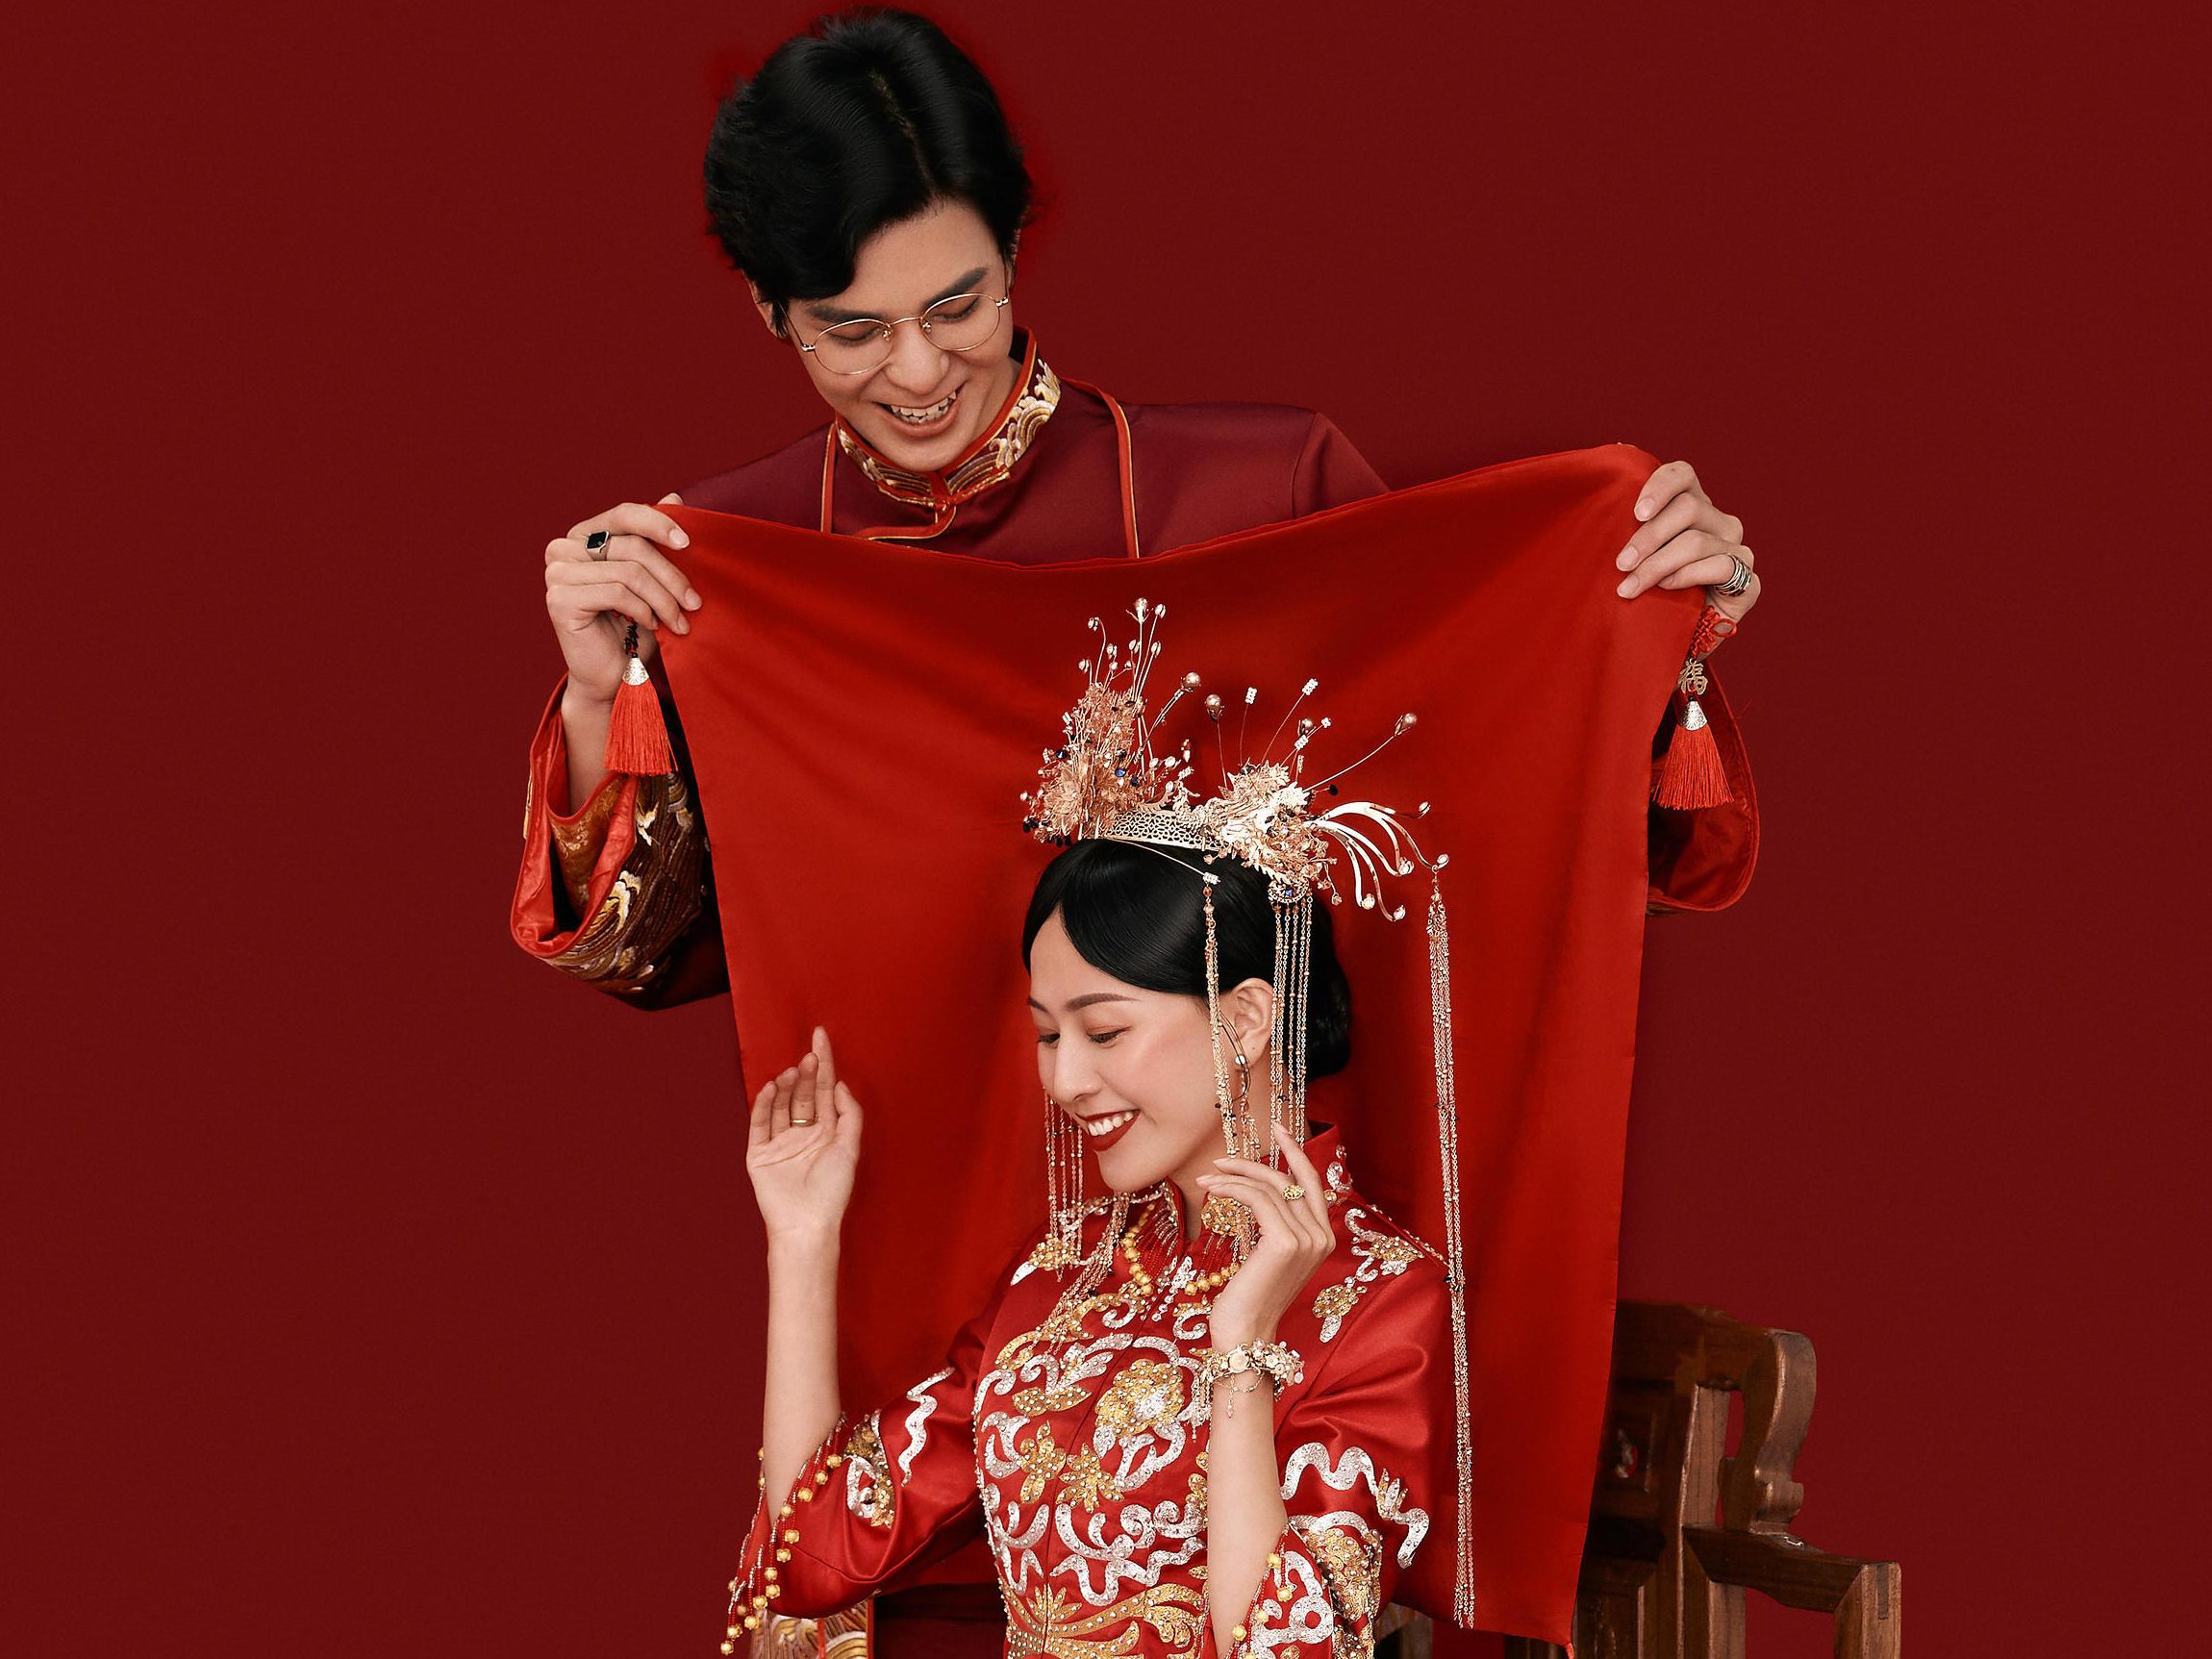 廣州結婚習俗有哪些 廣州結婚風俗流程最全詳細清單